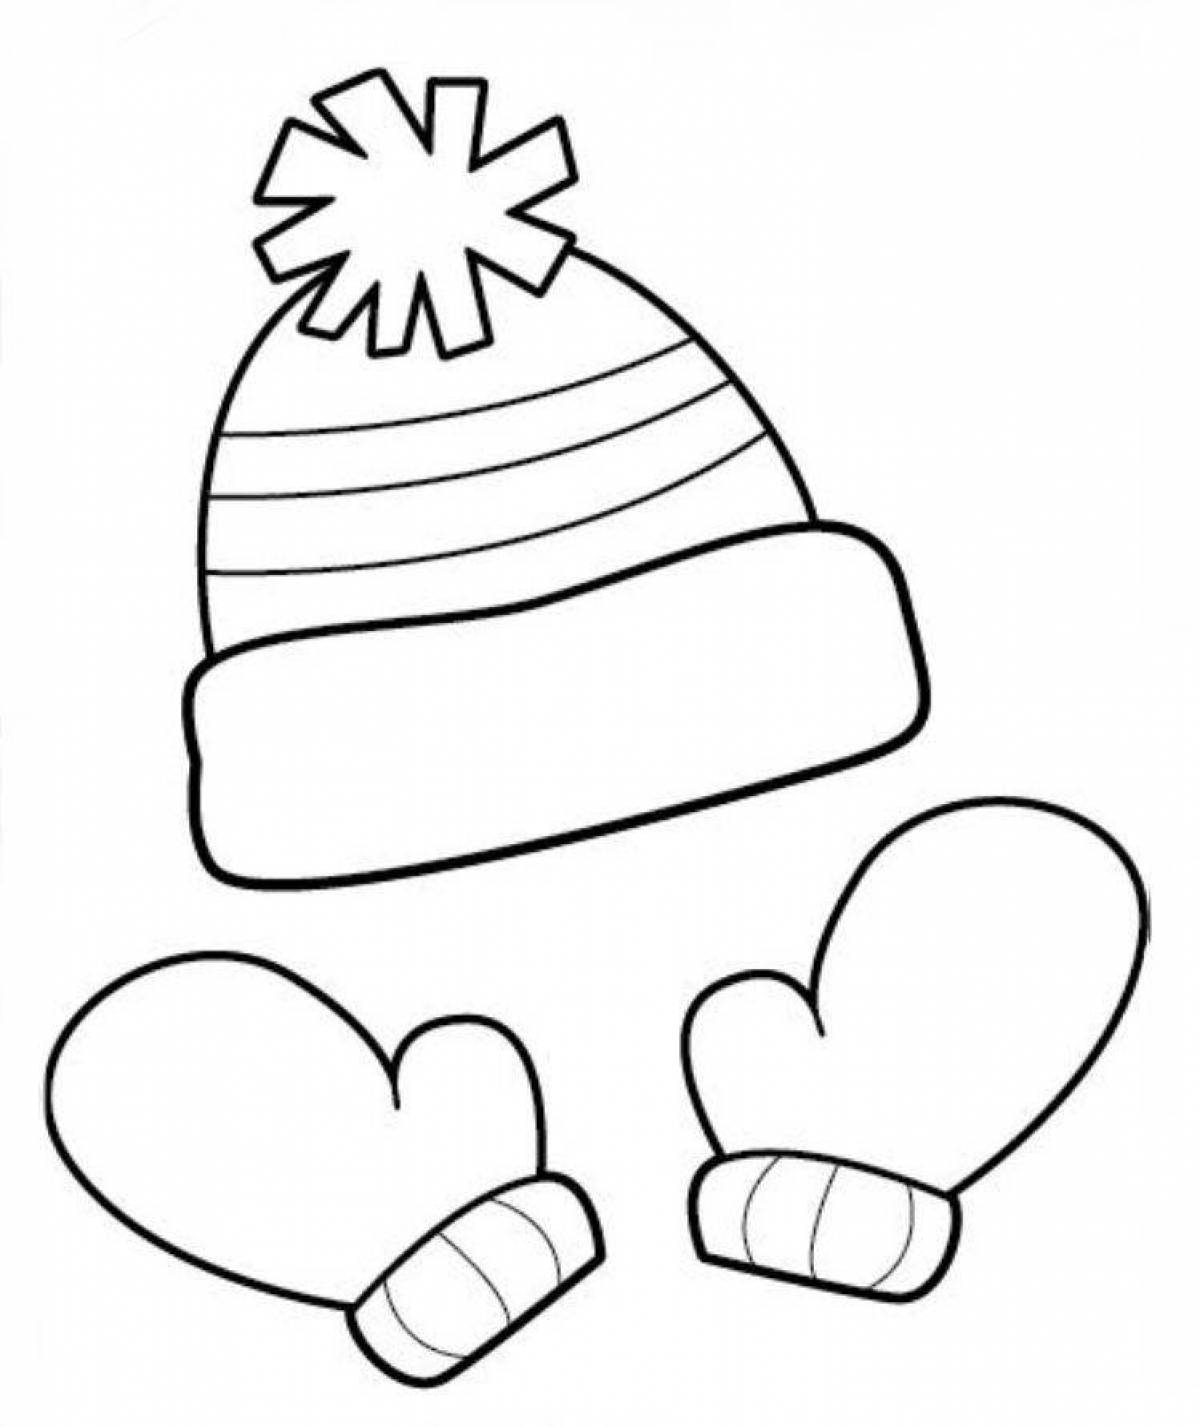 Зимняя шапка и варежки раскраска для детей